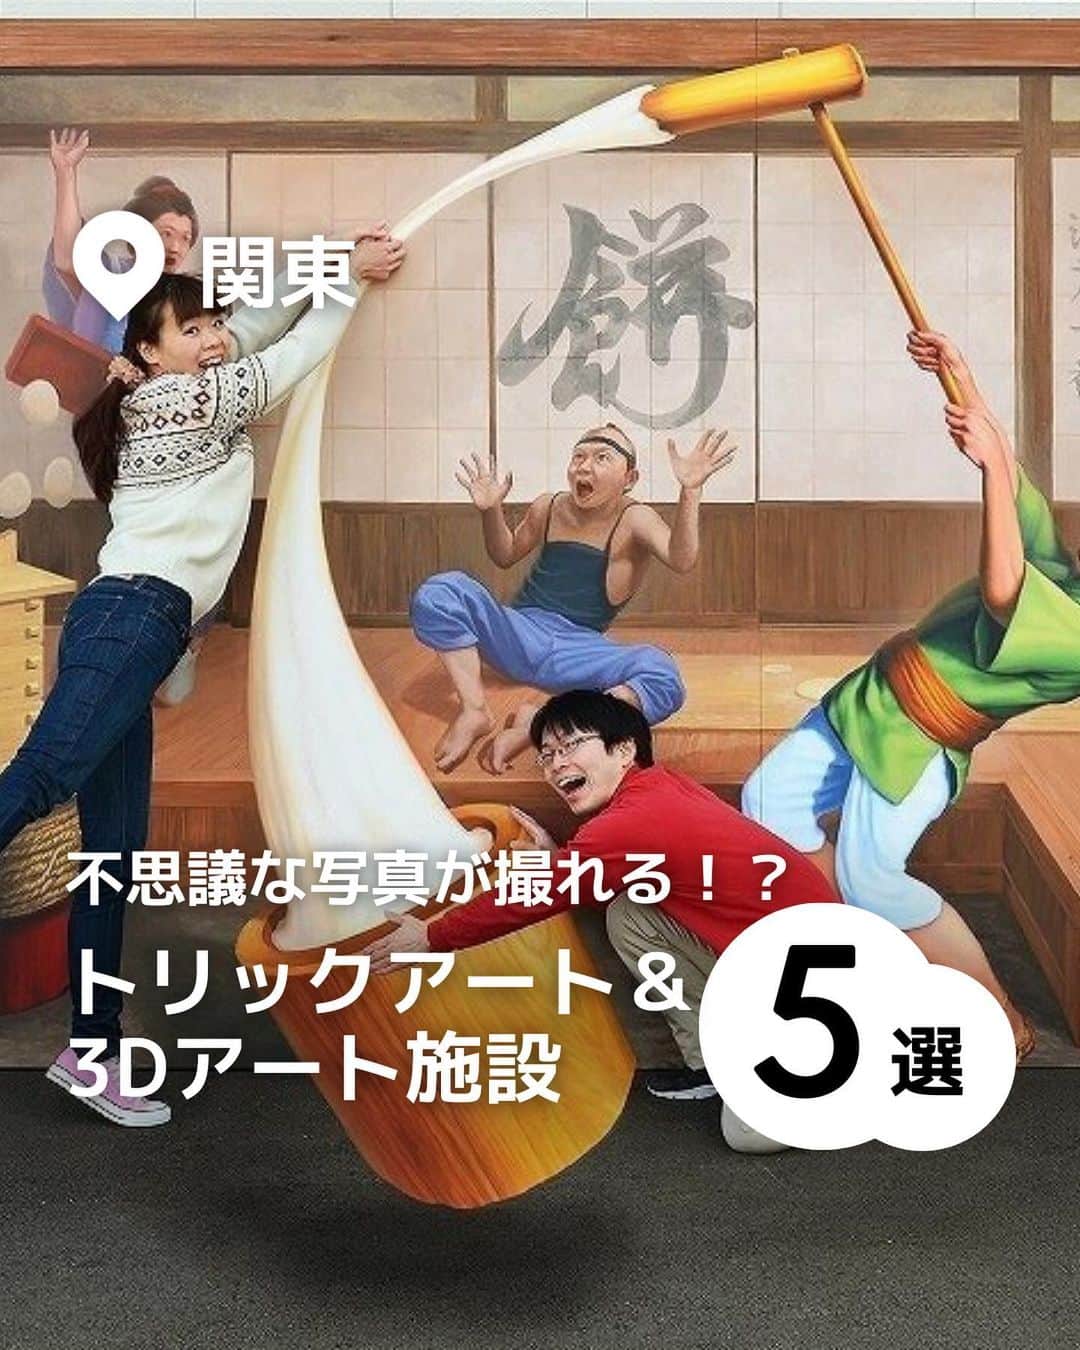 iko-yo（いこーよオフィシャル）さんのインスタグラム写真 - (iko-yo（いこーよオフィシャル）Instagram)「️今回ピックアップしたのは「関東　不思議な写真が撮れる？！トリックアート&3Dアート施設5選」 ーーーーーーーーーーーーーーーーーー 【 #東京トリックアート迷宮館 】 @tokyotrickart  🌈江戸をテーマにした「和風なトリックアート」が楽しめる美術館🌈 お台場の「デックス東京ビーチ　シーサイドモール」内にある「東京トリックアート迷宮館」は、江戸をテーマにした「和風なトリックアート」とトリックアートの名作が楽しめる美術館。からくりいっぱいの「愉快な忍者とお化けエリア」や、見る角度によって印象が変わる絵など、多彩なバリエーションのアートが用意されています。  📍住所 東京都港区台場1-6-1 デックス東京ビーチ シーサイドモール4F  ⏰営業時間 11:00〜21:00 ※最終入館は30分前まで  🎡定休日 不定休（デックス東京ビーチの休館日に順ずる）  🚗アクセス ・電車の場合：ゆりかもめ　「お台場海浜公園」駅下車　徒歩2分 ・車の場合：首都高速11号線台場線　「台場ランプ」から約3分  【 #高尾山トリックアート美術館 】 @takaotrickart 🌈 「あたかもそこに本物が存在するが如く」がテーマ🌈 観光地としても人気の高尾山の麓に位置！幅広い年齢層が楽しめる美術館です。「あたかもそこに本物が存在するが如く」をテーマとした作品が展示されている館内には、まるで絵の中に入り込んだかのような不思議な写真が撮影できる仕掛けが満載！  📍住所 東京都八王子市高尾町1786  ⏰営業時間 10:00〜18:00（4月〜11月）、10:00 〜18:00（12月〜3月） ※最終入館は30分前まで  🎡定休日 木曜日 ※コロナウイルスのため、当分の間。 ※HPにて随時最新情報をお知らせさせていただきます。  🚗アクセス 車の場合：中央高速八王子第2ICより16号、20号経由で15分 電車の場合：京王高尾線高尾山口駅前　徒歩1分  【 #横浜トリックアートクルーズ 】 🌈 海の冒険をテーマのトリックアートが楽しめる🌈 みなとみらいの「横浜ランドマークプラザ」内！海の冒険をテーマにさまざまなトリックアートが楽しめるスポットです。 ARによる演出を動画で撮影できる最新トリックアート作品「TRICKAR（トリックアール）」がも！  📍住所 神奈川県横浜市西区みなとみらい2-2-1　横浜ランドマークプラザ4階  ⏰営業時間 11:00〜20:00 ※最終入館は30分前まで  🎡定休日 不定休　※横浜ランドマークプラザが休館の際などにはお休みさせていただくことがあります。  🚗アクセス 電車の場合：JR線 「桜木町駅」から動く歩道で徒歩5分  【 #横浜大世界 】 @yokohamadaisekai  🌈 不思議でリアルなさまざまな写真を撮影できるアートが満載！🌈 横浜中華街にある全天候型のエンターテインメント施設の4〜8階で、目の錯覚を利用したアートが楽しめます。館内には、飛び出る恐竜の口の中に入り込んだり、無重力空間を浮遊したりしているような不思議でリアルなアートが満載！  📍住所 横浜市中区山下町97　横浜大世界4〜8階  ⏰営業時間 平日10:30〜19:00 土日祝10:00〜19:00  🎡定休日  無休  🚗アクセス 電車の場合：みなとみらい線元町・中華街駅より徒歩約2分  【 #トリック3Dアート #inCOEDO 】 🌈 国内外で活躍するトリックアート作家・服部正志氏の東日本初のミュージアム🌈 エントランスからまず目に飛び込んでくる「パンチ　in　COEDO」は、壁を破壊しているような迫力ある写真が撮影できるインパクト抜群の作品です。  📍住所 埼玉県川越市元町1-13-1  ⏰営業時間 10:30〜17:30（最終入館17:00）  🎡定休日 火曜日（祝日の場合は開館。他に作品入れ替え日など、このホームページで予告します）  🚗アクセス 電車の場合：本川越駅より徒歩14分  ※2023年10月26日時点の情報です。最新の情報は公式HPをご確認下さい。　 ーーーーーーーーーーーーーーーーーーー おでかけ情報量は日本最大級！ 子どもとお出かけ情報サイト「いこーよ」 「親子でおでかけしたい場所」をご紹介させていただいています！ お子さんとのおでかけの思い出の写真を、このアカウントをフォローの上#いこーよ #いこーよおでかけ部 をつけてぜひ投稿してください。魅力的な写真は、いこーよ公式SNSで紹介させていただきます！ 募集中タグ#いこーよ #いこーよおでかけ部 「子どもと行きたい！」と思ったら保存が便利！ プロフィールのURLから「いこーよ」のサイトに行くと、他の投稿やオトクな情報などが載っています♪ ☞ @ikoyo_odekake #いこーよ #お出かけ #おでかけ #お出かけスポット #子連れ #子連れ旅行#こどものいる暮らし #子連れスポット  #子どもとおでかけ #横浜ママ #横浜観光 #横浜旅行 #トリックアート #3Dアート #屋内施設 #フォトスポット」11月12日 19時13分 - ikoyo_odekake